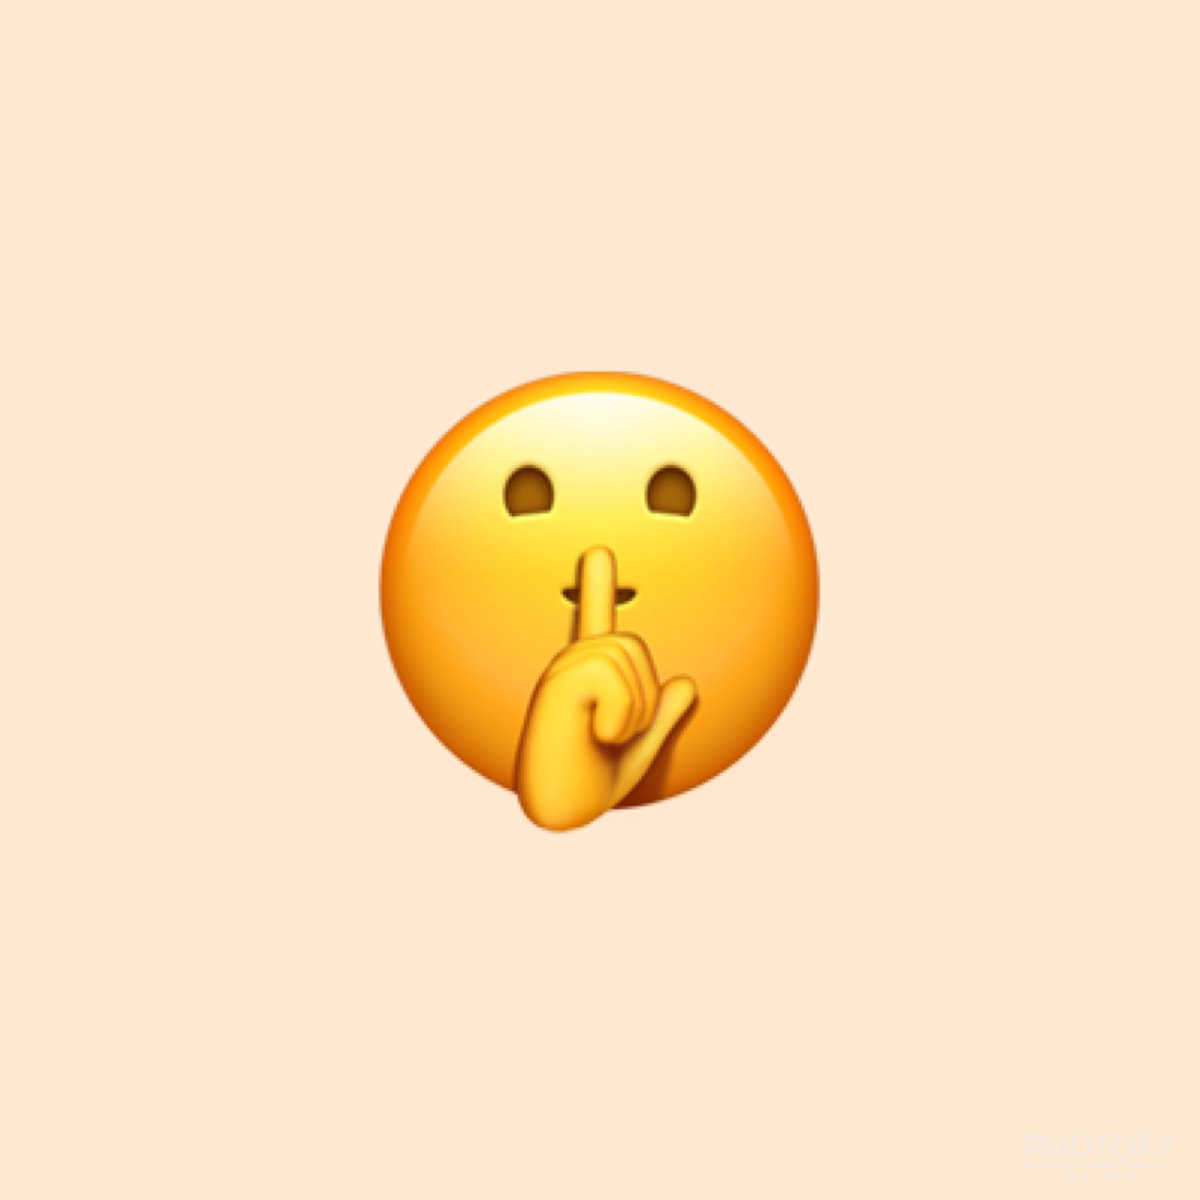  @BOGUMMY as emojis: a thread  #ParkBoGum